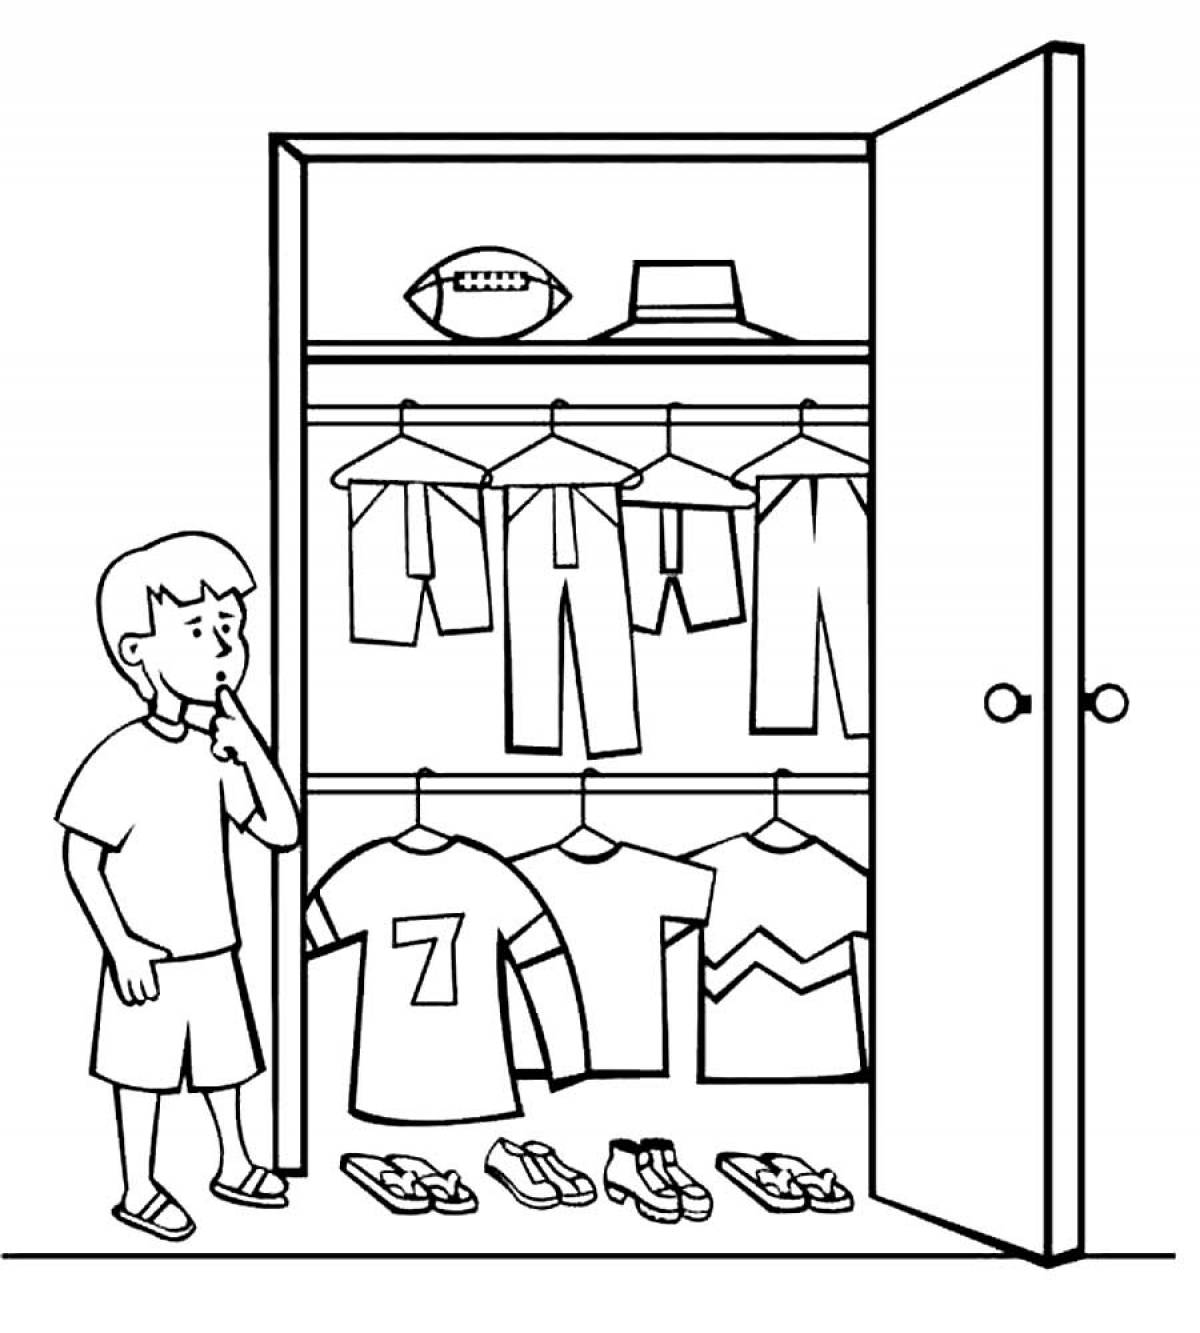 A wardrobe